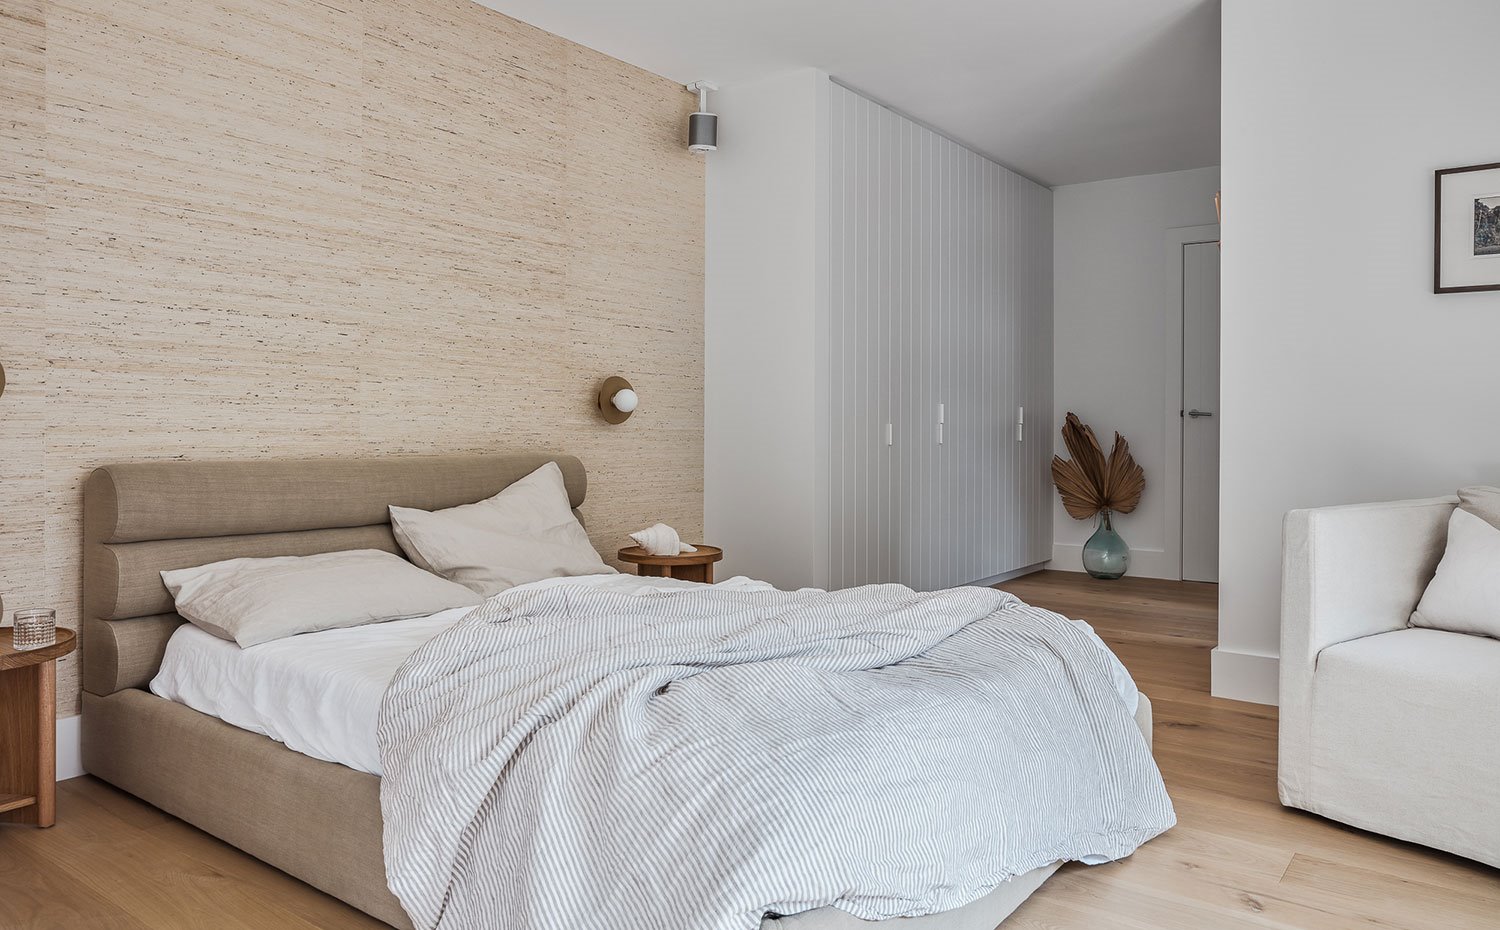 Dormitorio con cama tapizada en tejido natural color café, armarios blancos, sillón crudo, jarrón de cristal con hoja seca